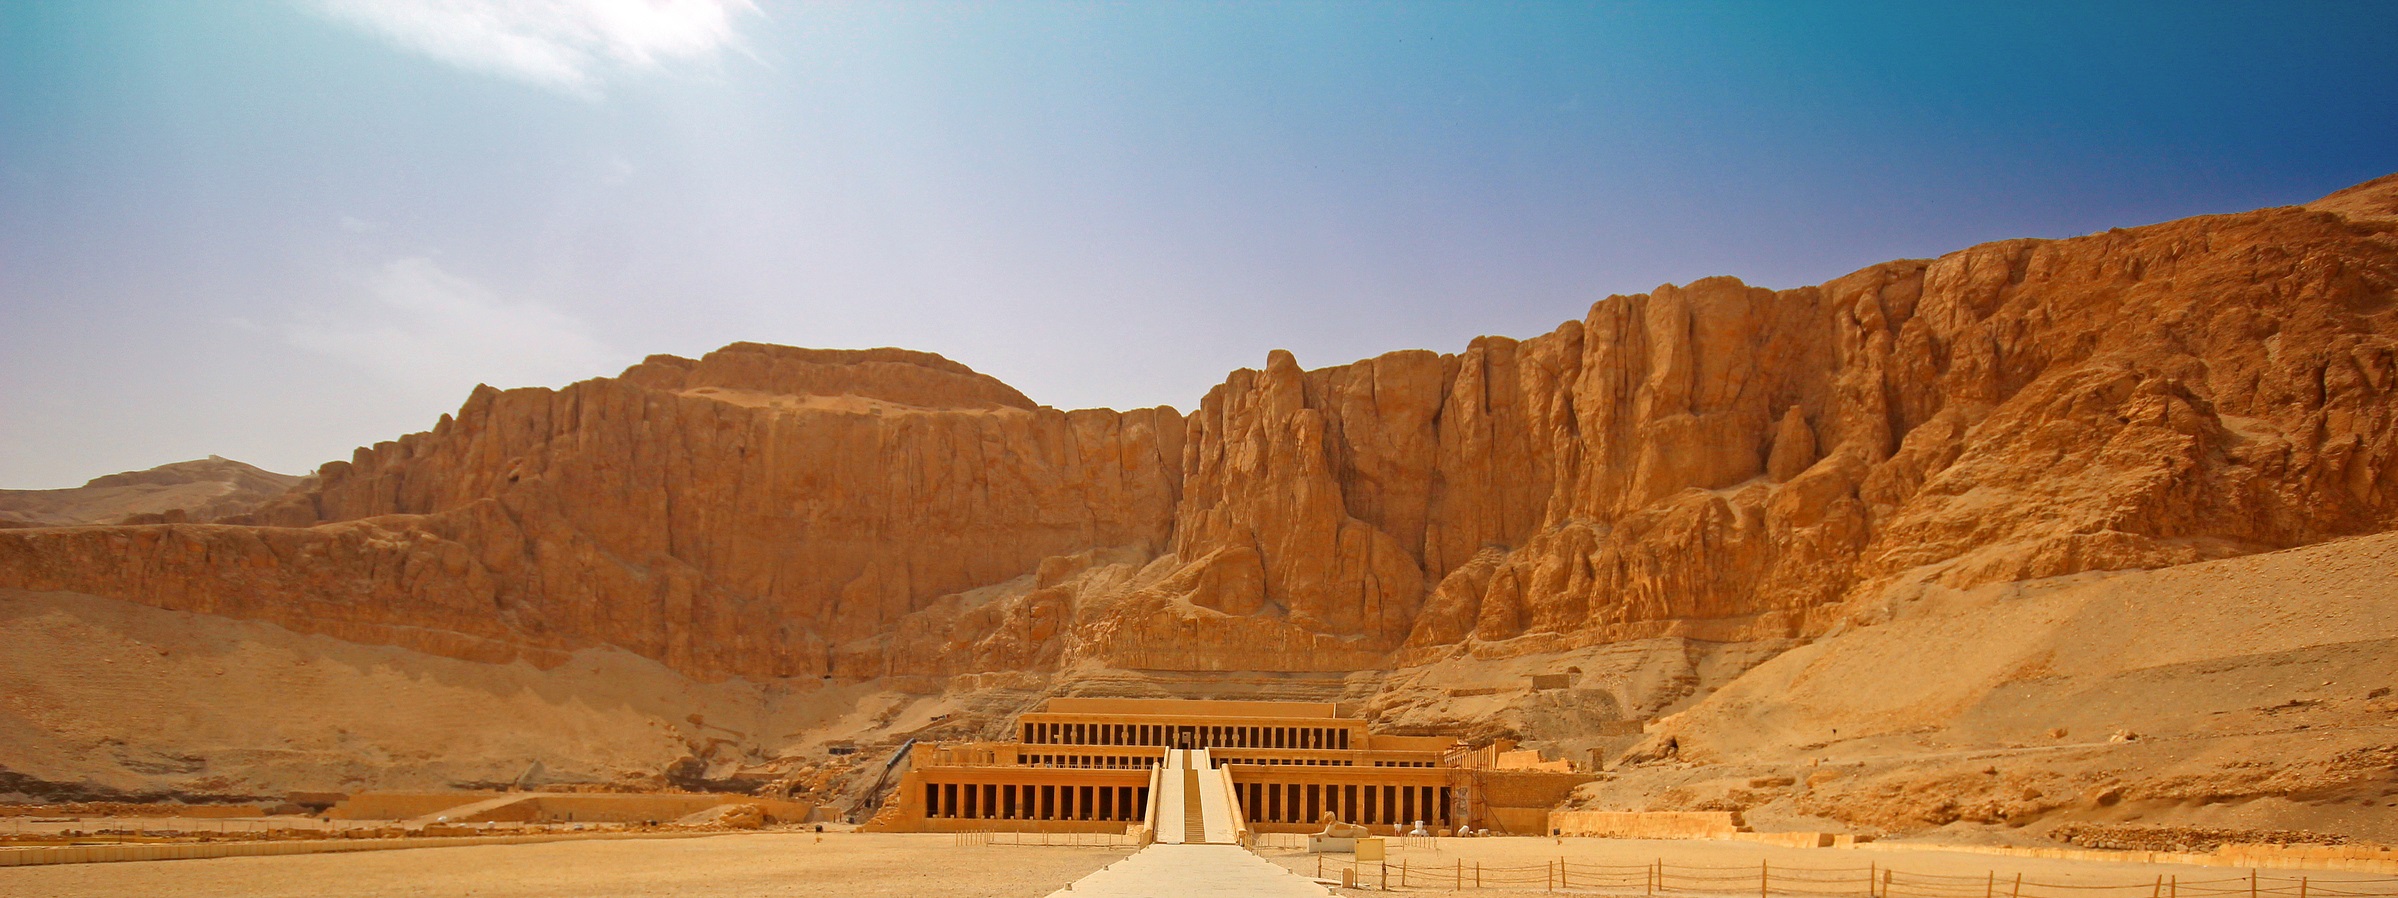 Niers Tours:Operator Pelancongan Masuk Mesir